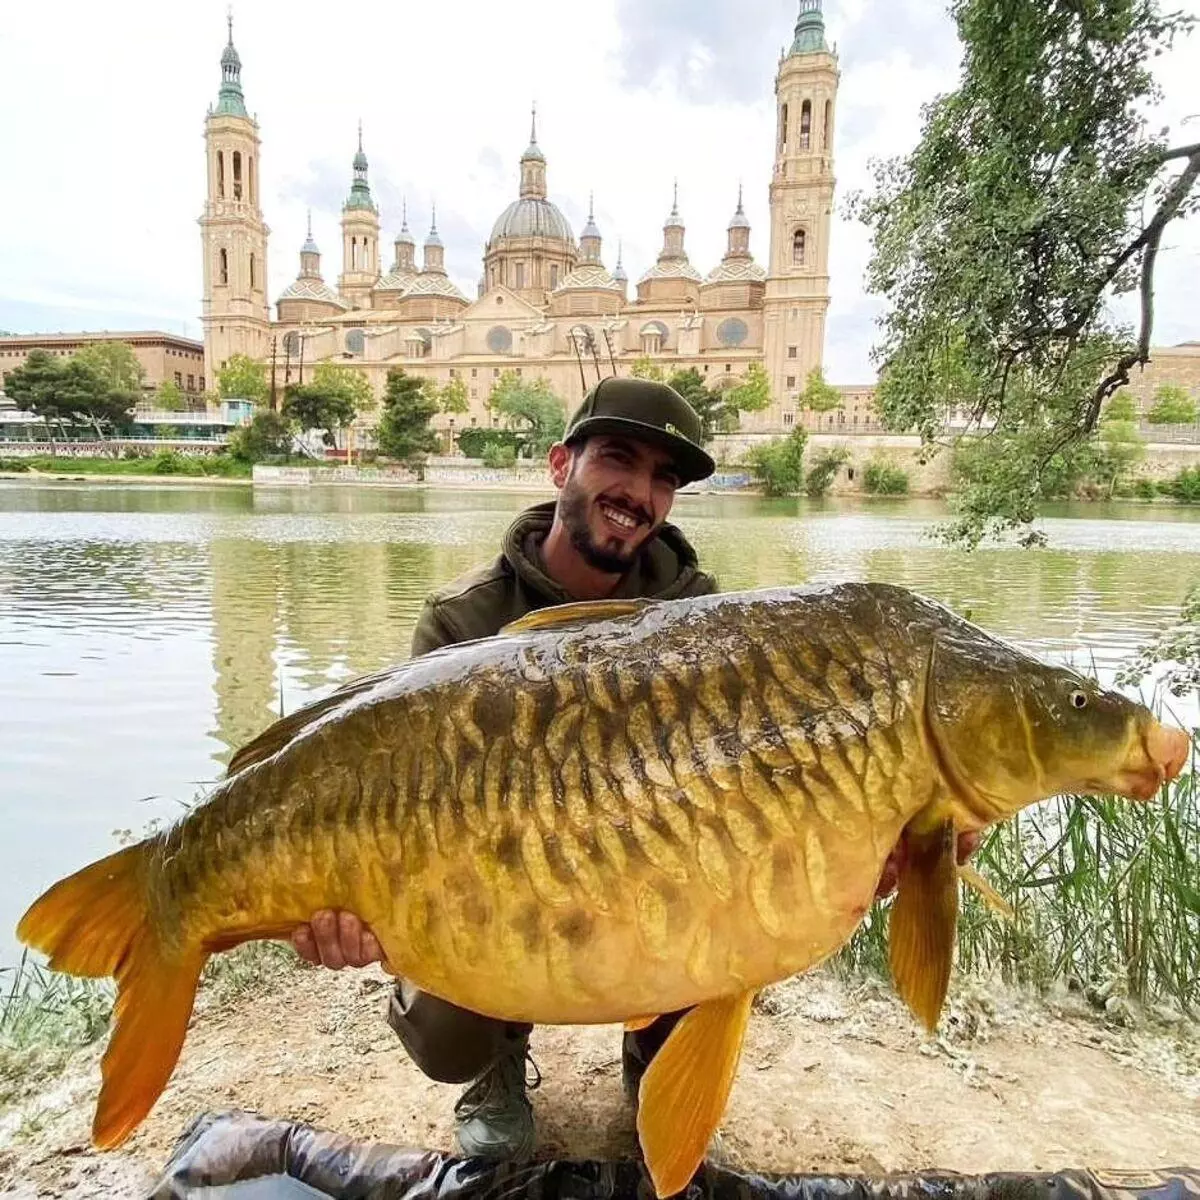 Un pescador presume de su impresionante captura frente al Pilar: "Un pez único de más de 20 kilos"